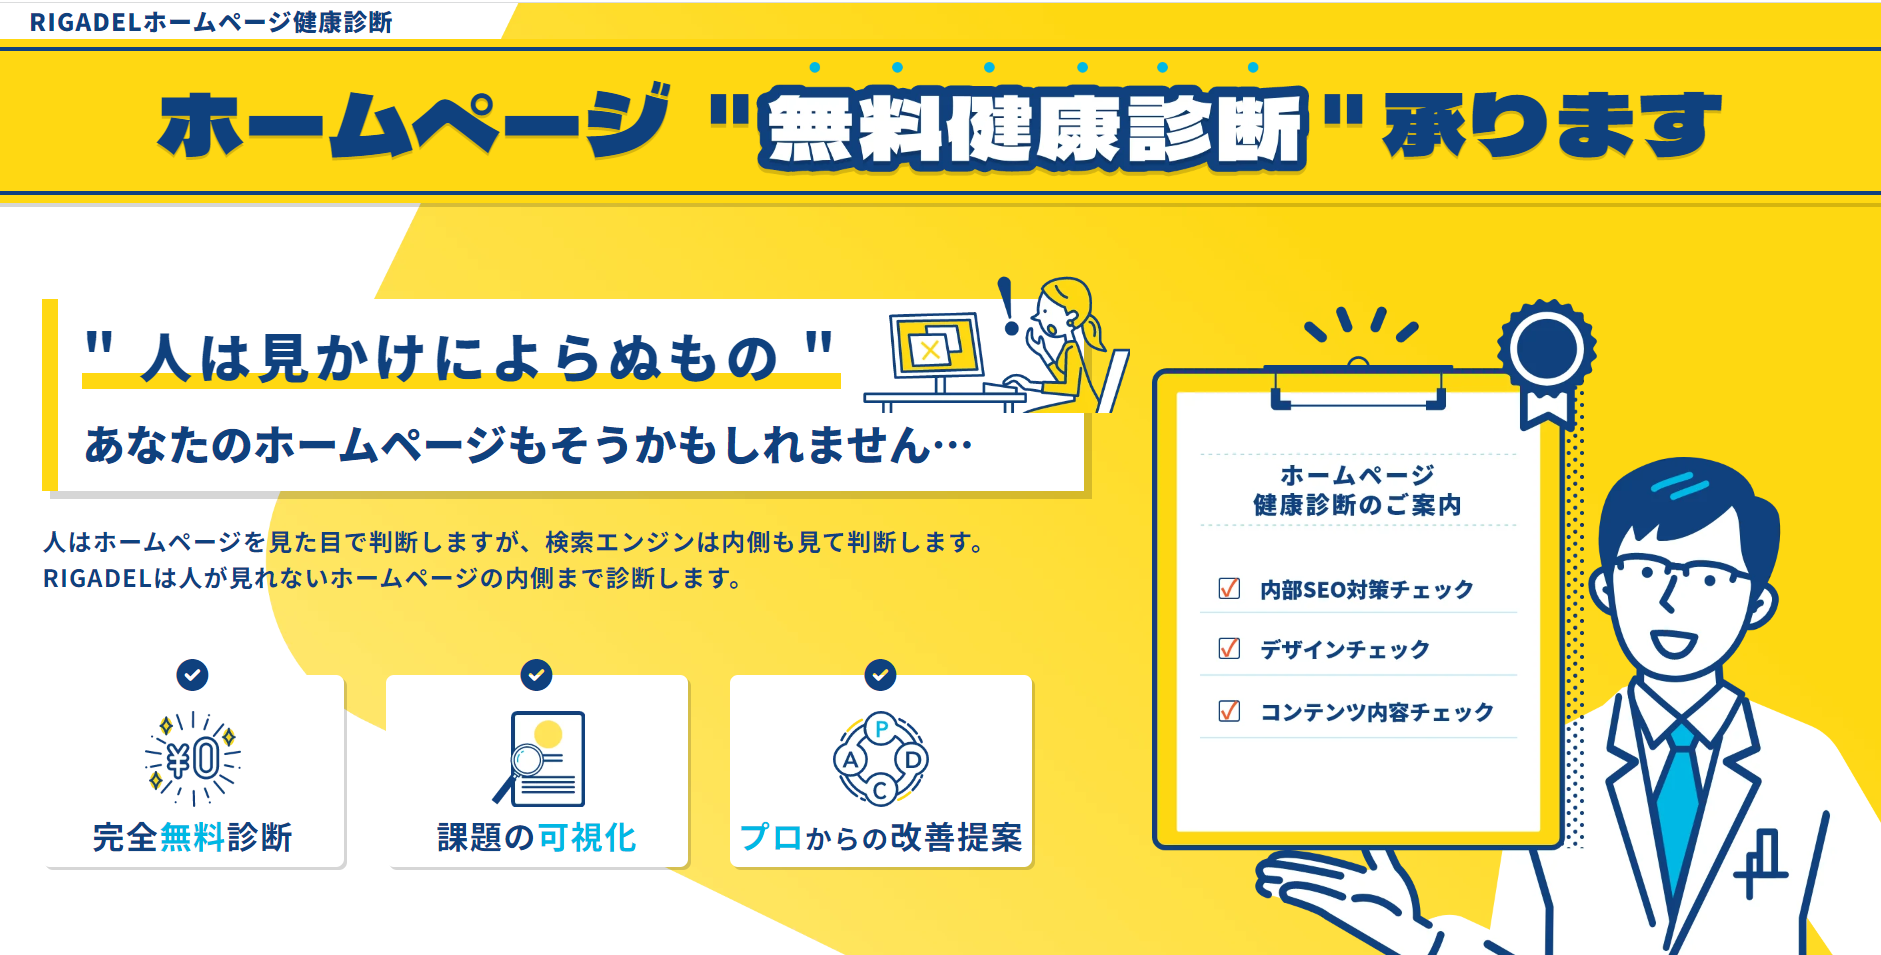 【神戸商工会議所×RIGADEL】ホームページの無料診断サービスのテスト利用企業の募集！